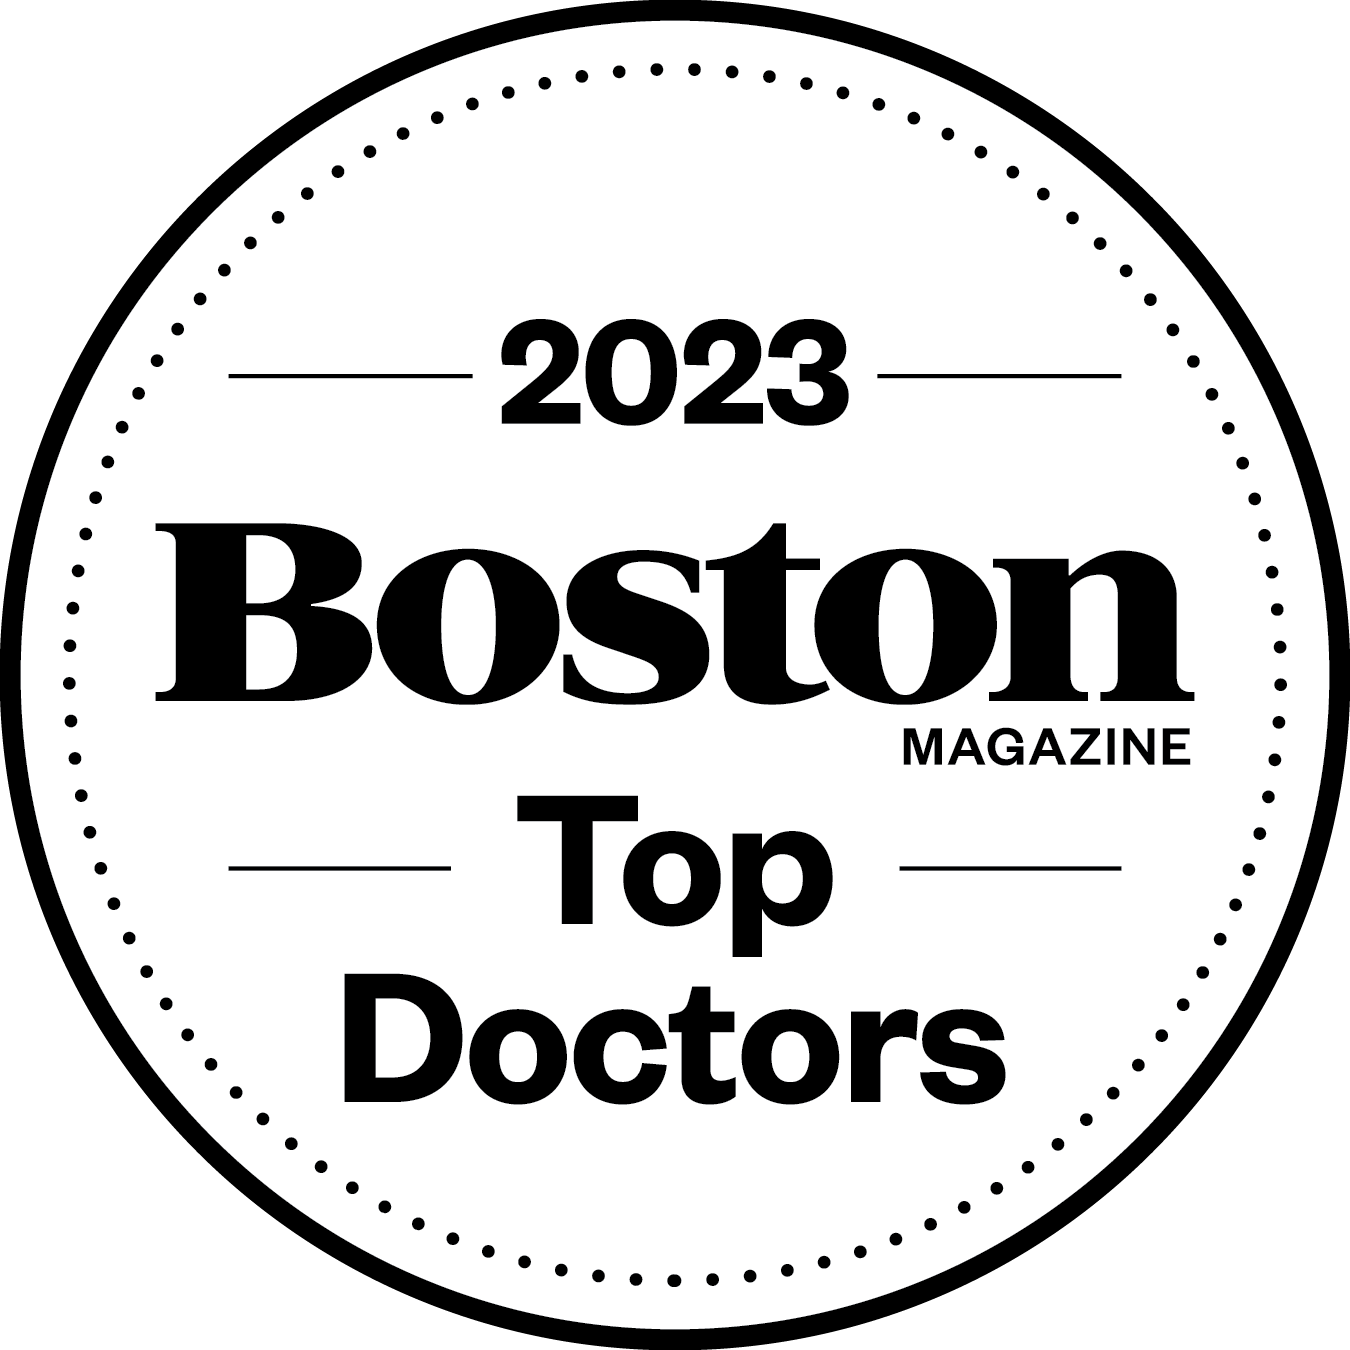 Boston Magazine Top Doctors Window Decals